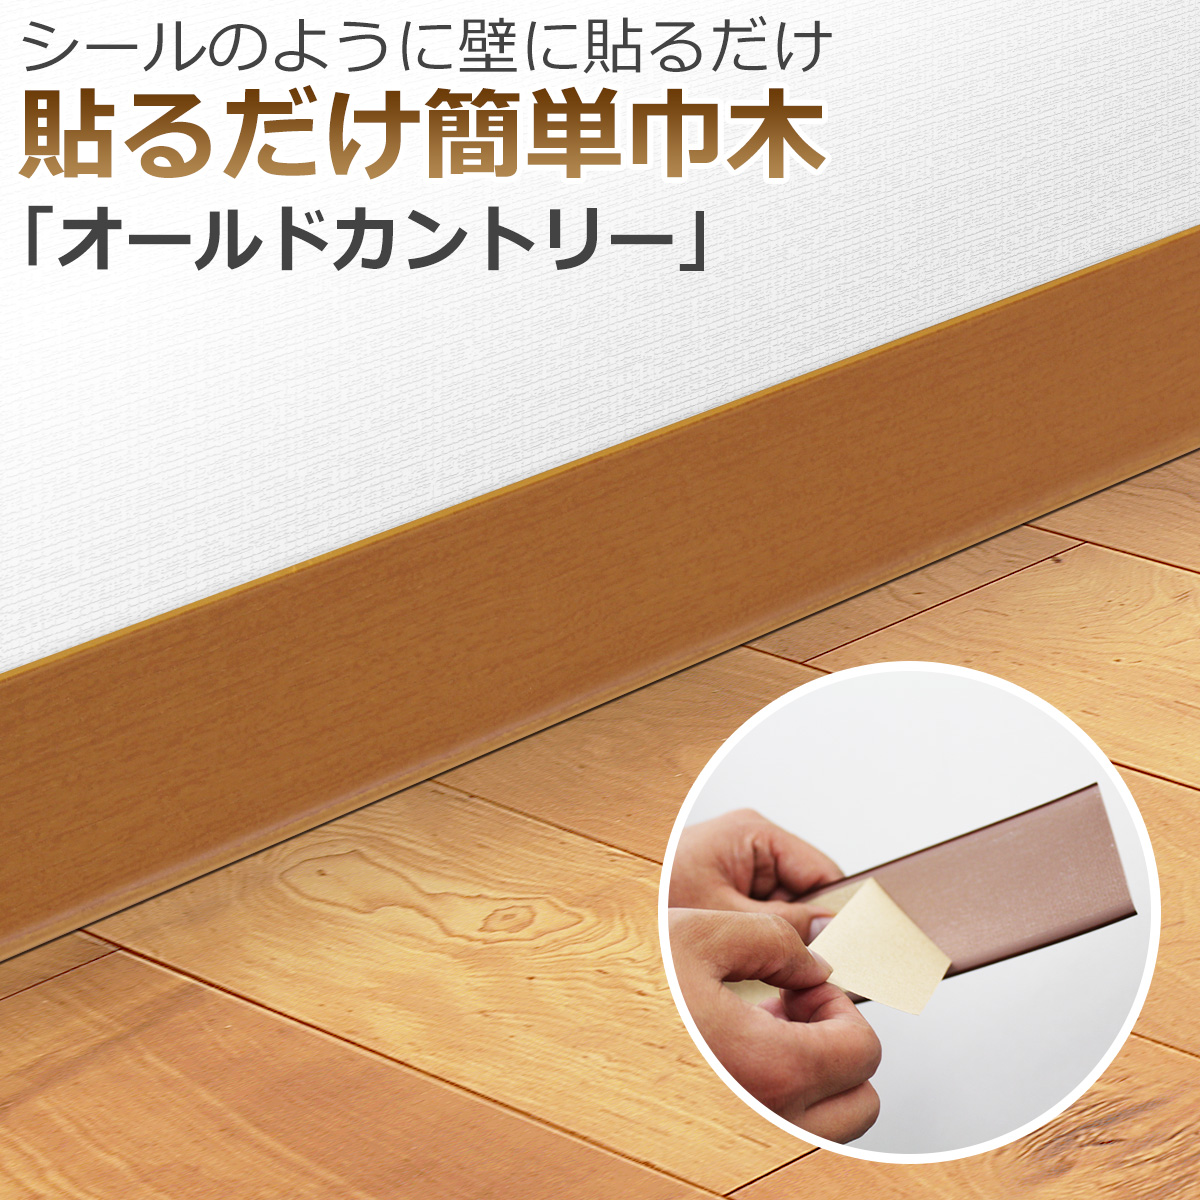 シールのように壁に貼るだけ　貼るだけ簡単巾木「オールドカントリー」